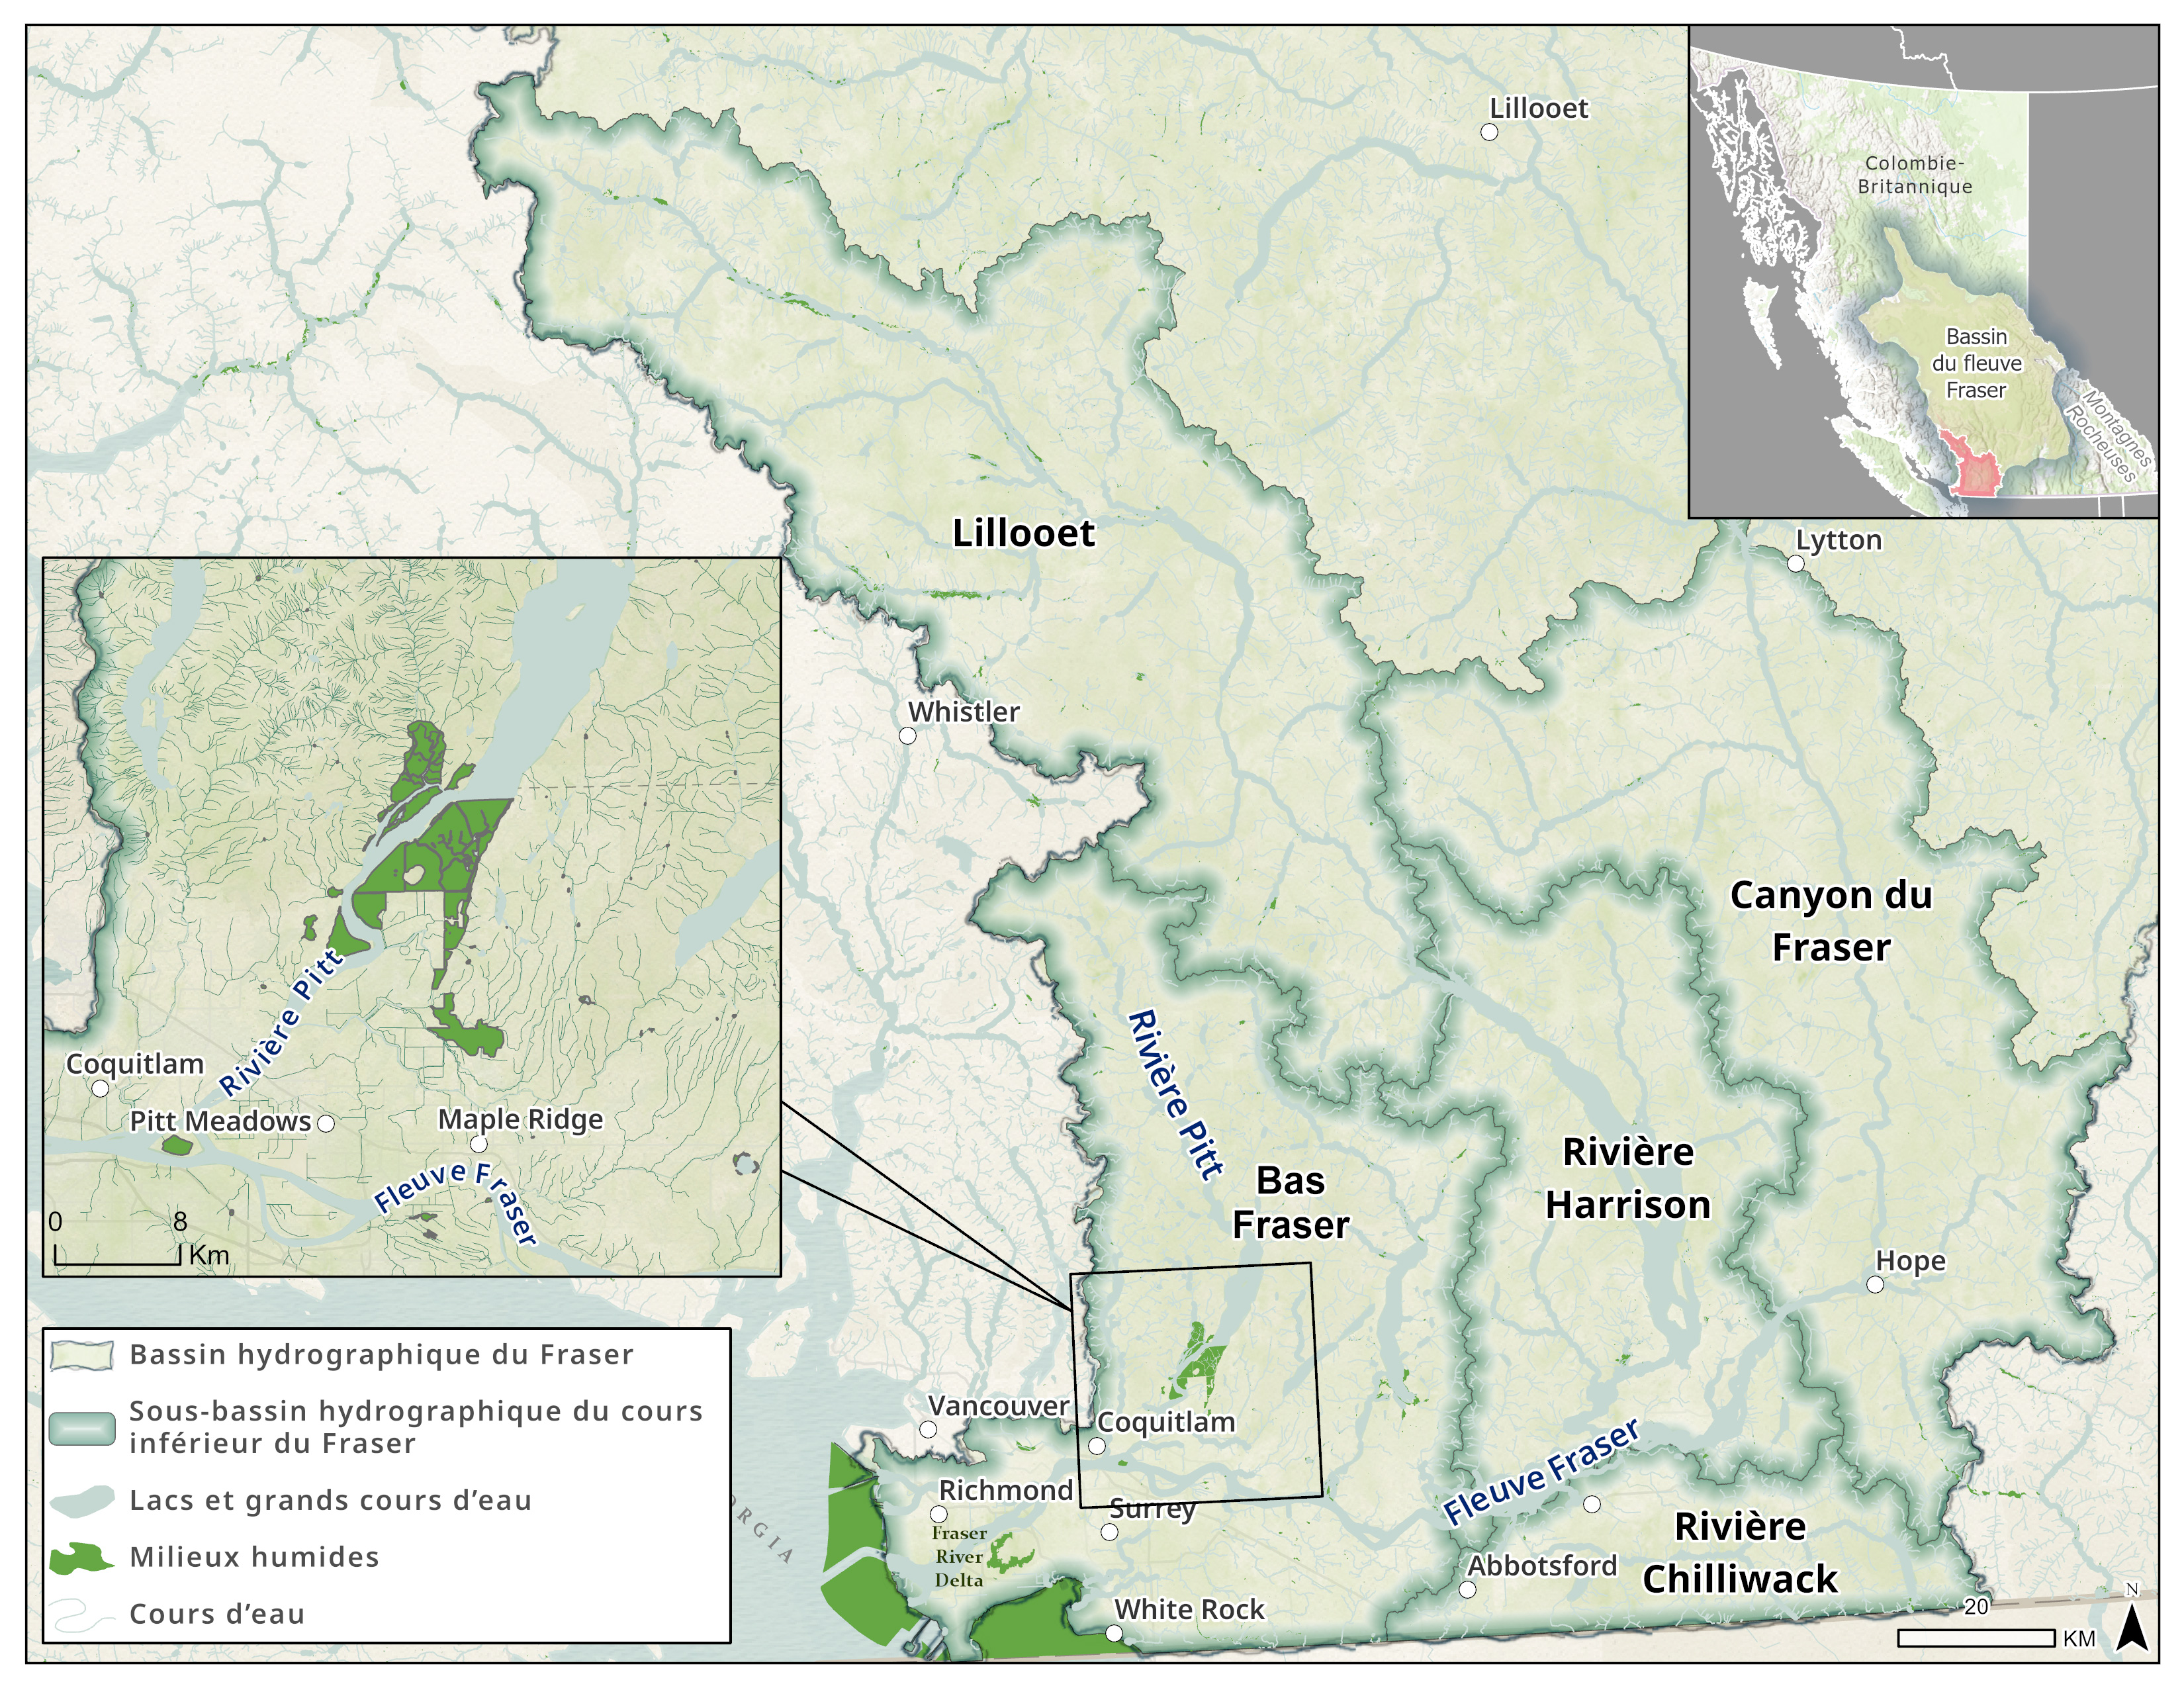 Sous-bassins hydrographiques du bas Fraser : le bas Fraser (sud-ouest), la rivière Chilliwack (sud), la rivière Harrison (centre), Lillooet (nord) et le canyon du Fraser (est).